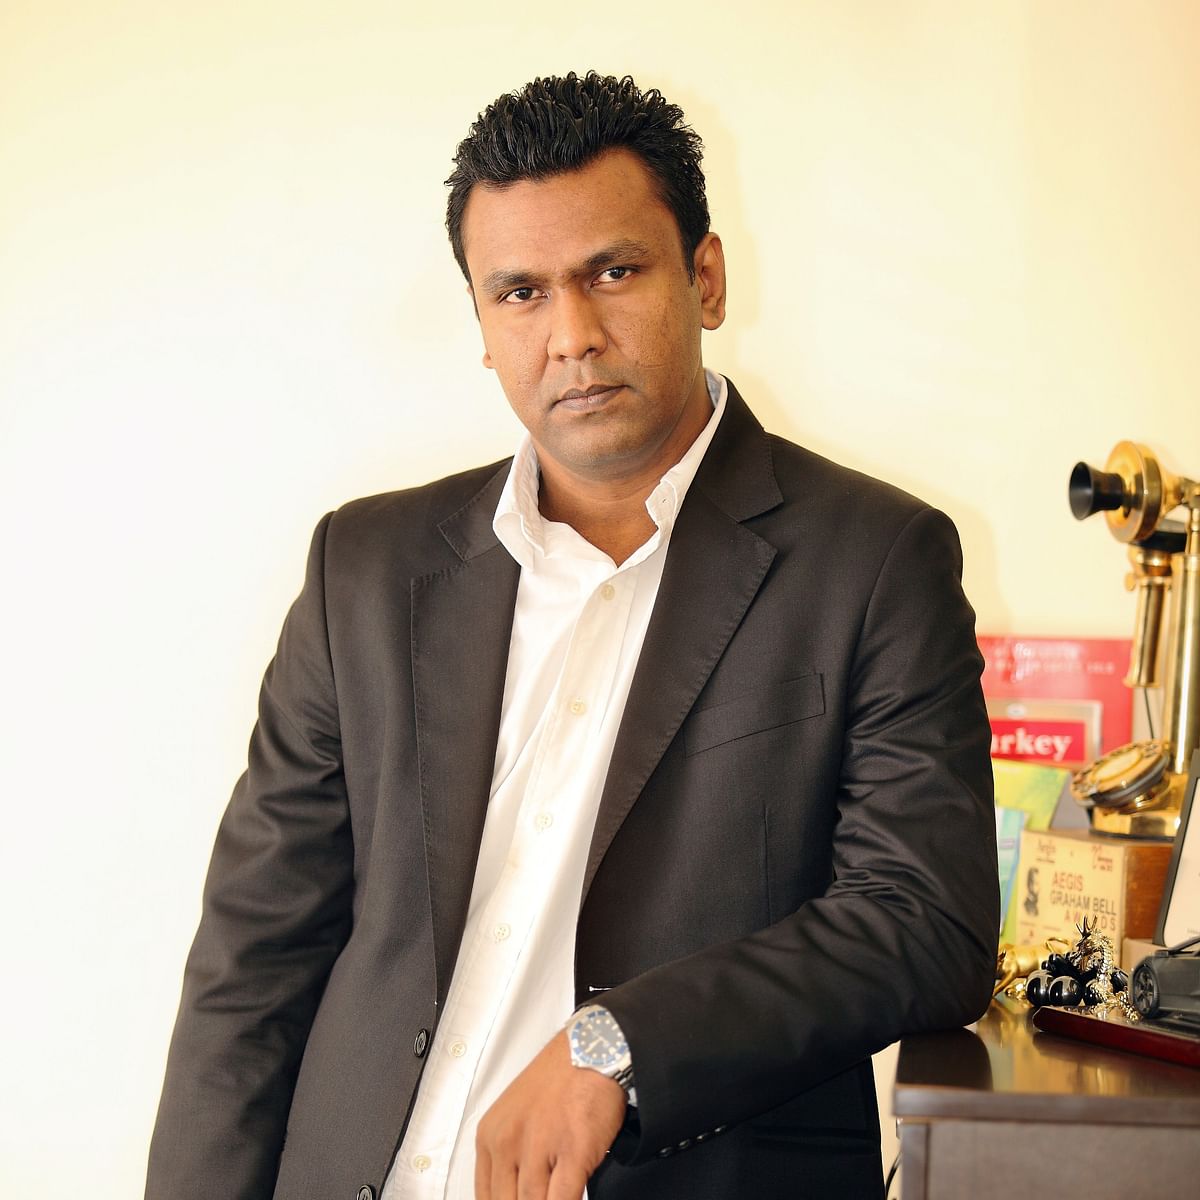 Shabir Momin, founder of New Media Holding